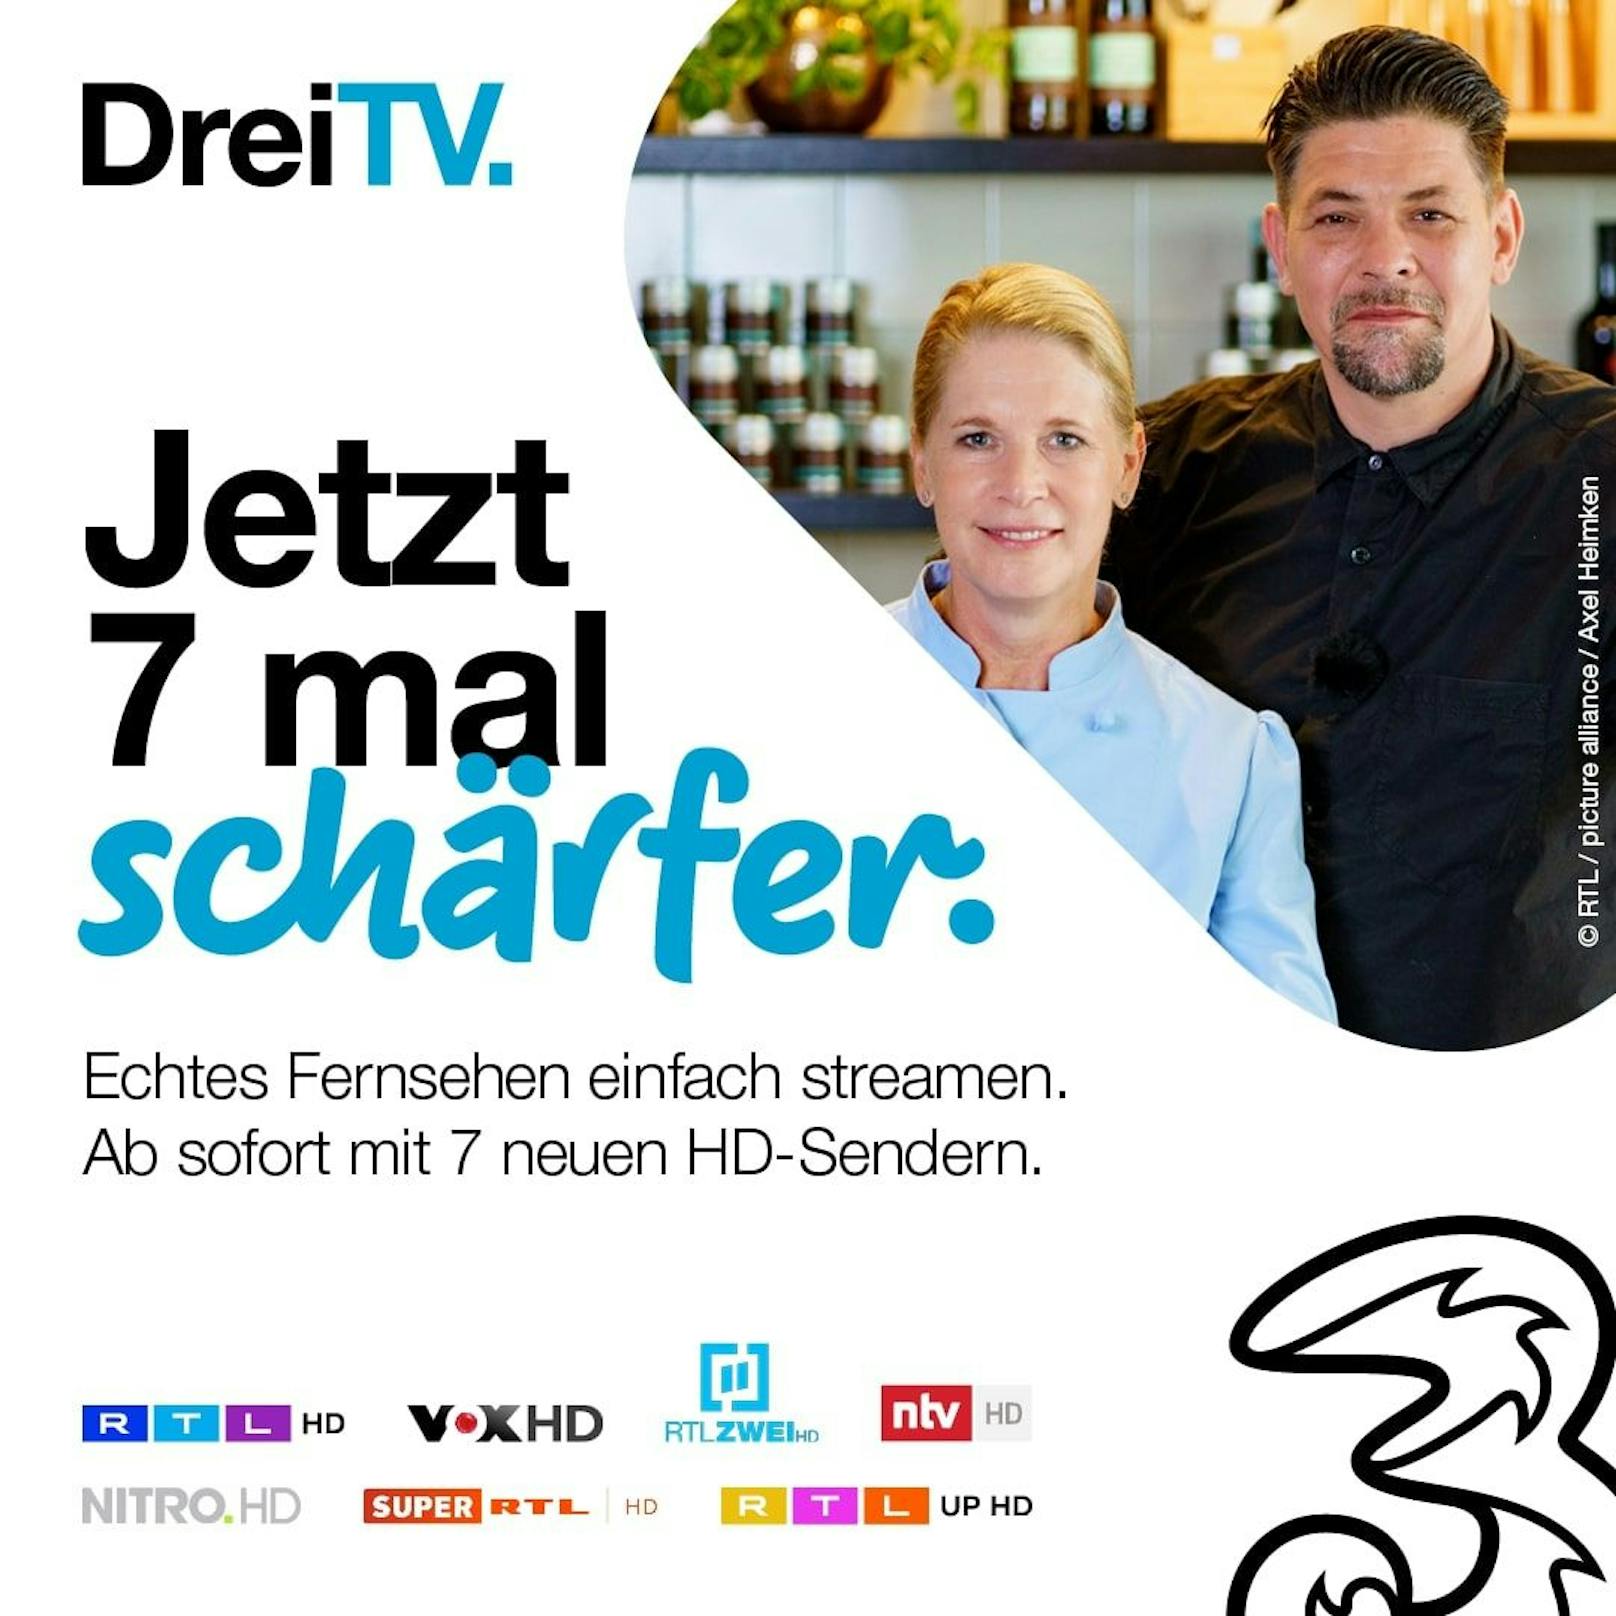 Mehr RTL auf Drei TV ab 9. März.